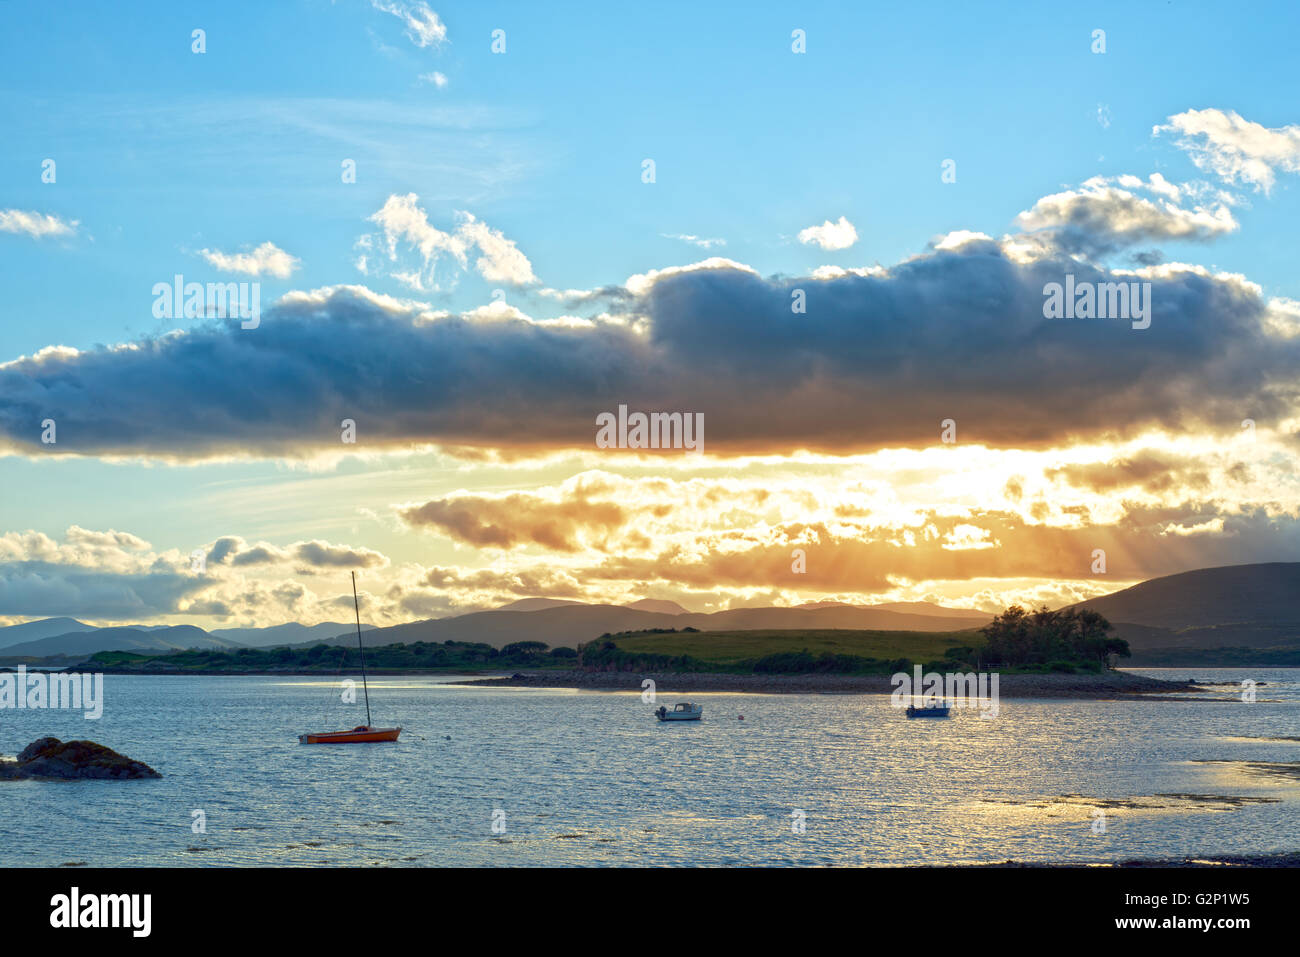 Bateaux dans une baie tranquille avec Island près de Kenmare, sur la manière dont l'Irlande sauvage de l'Atlantique avec un coucher du soleil orange Banque D'Images